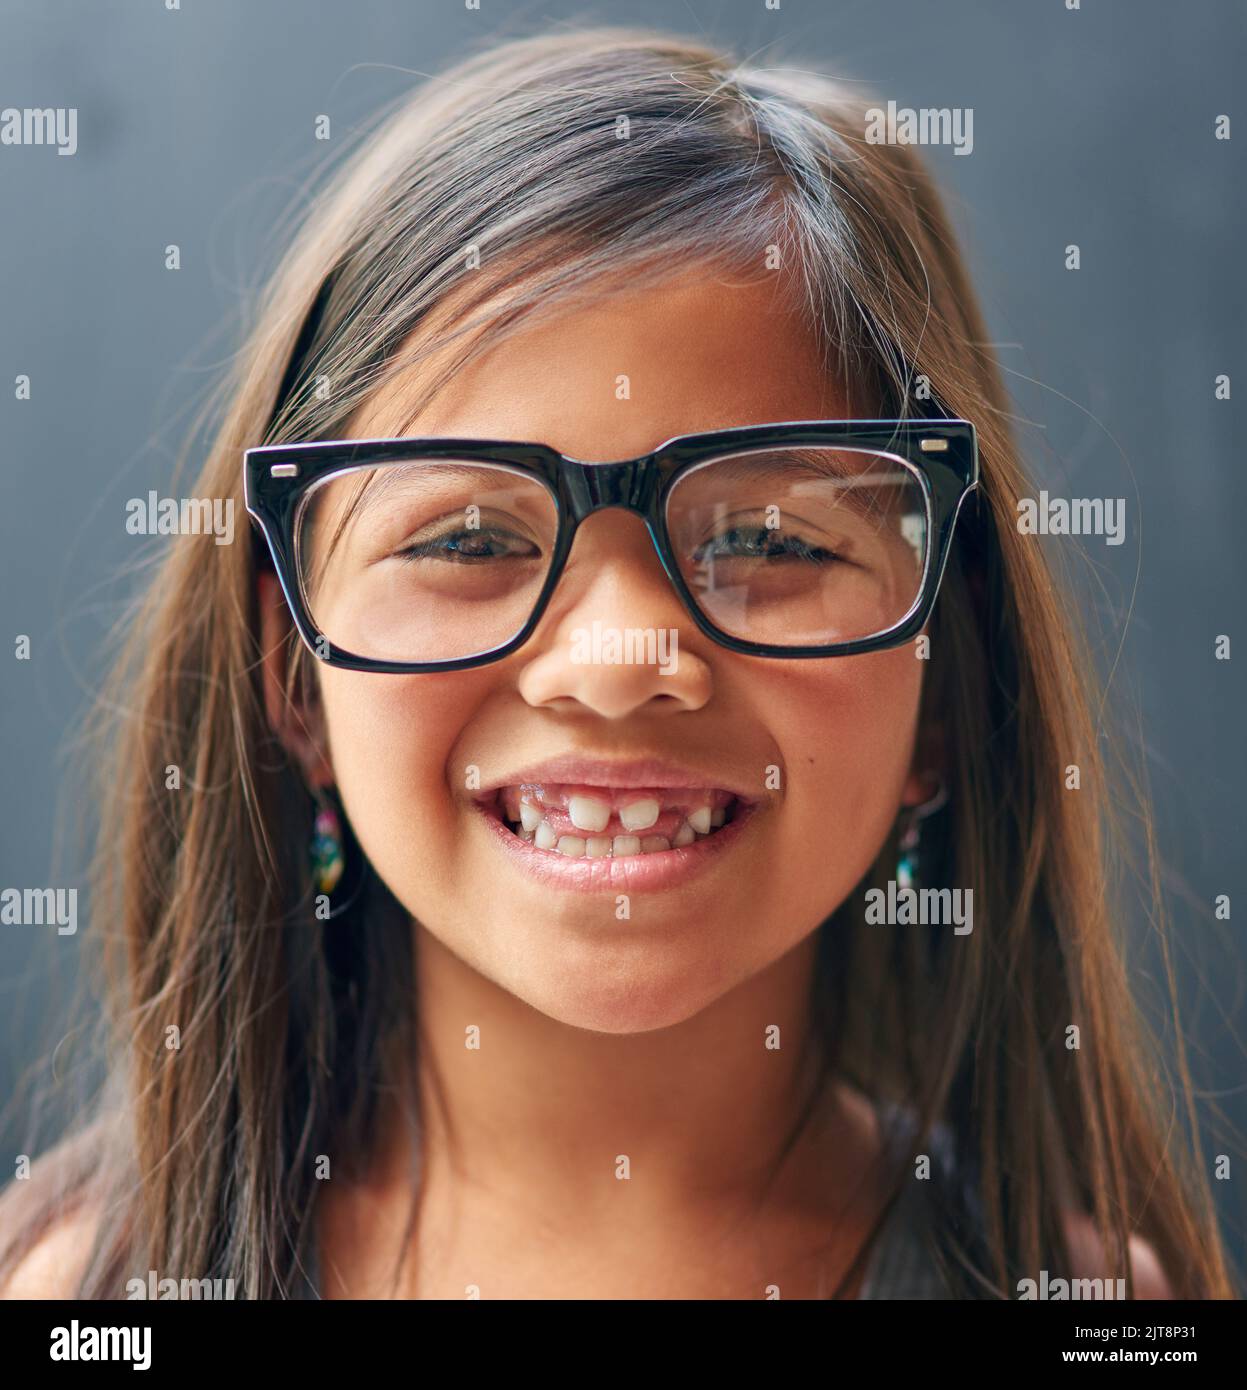 La gioia di essere un bambino. Studio ritratto di una bambina che indossa occhiali su uno sfondo scuro. Foto Stock